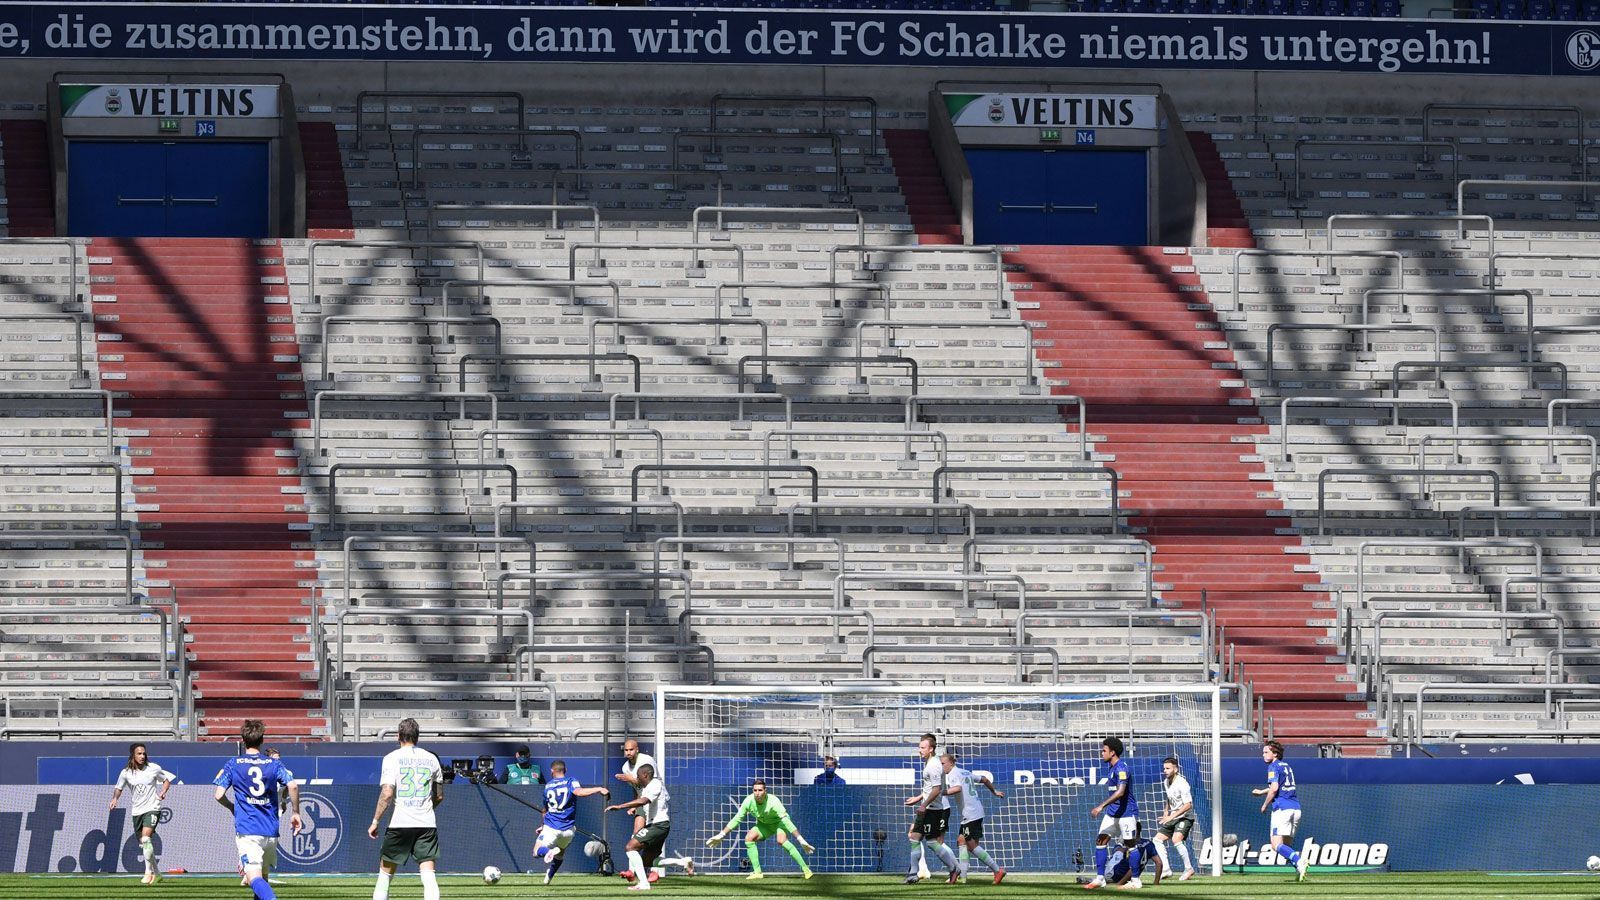 
                <strong>FC Schalke 04</strong><br>
                Stadion: Veltins-ArenaKapazität: 62.271Vorgehen: Dauerkartenverkauf ausgesetzt, zurzeit zieht der Verein kein Geld ein und will warten, bis Zuschauer wieder zurückkehren dürfen
              